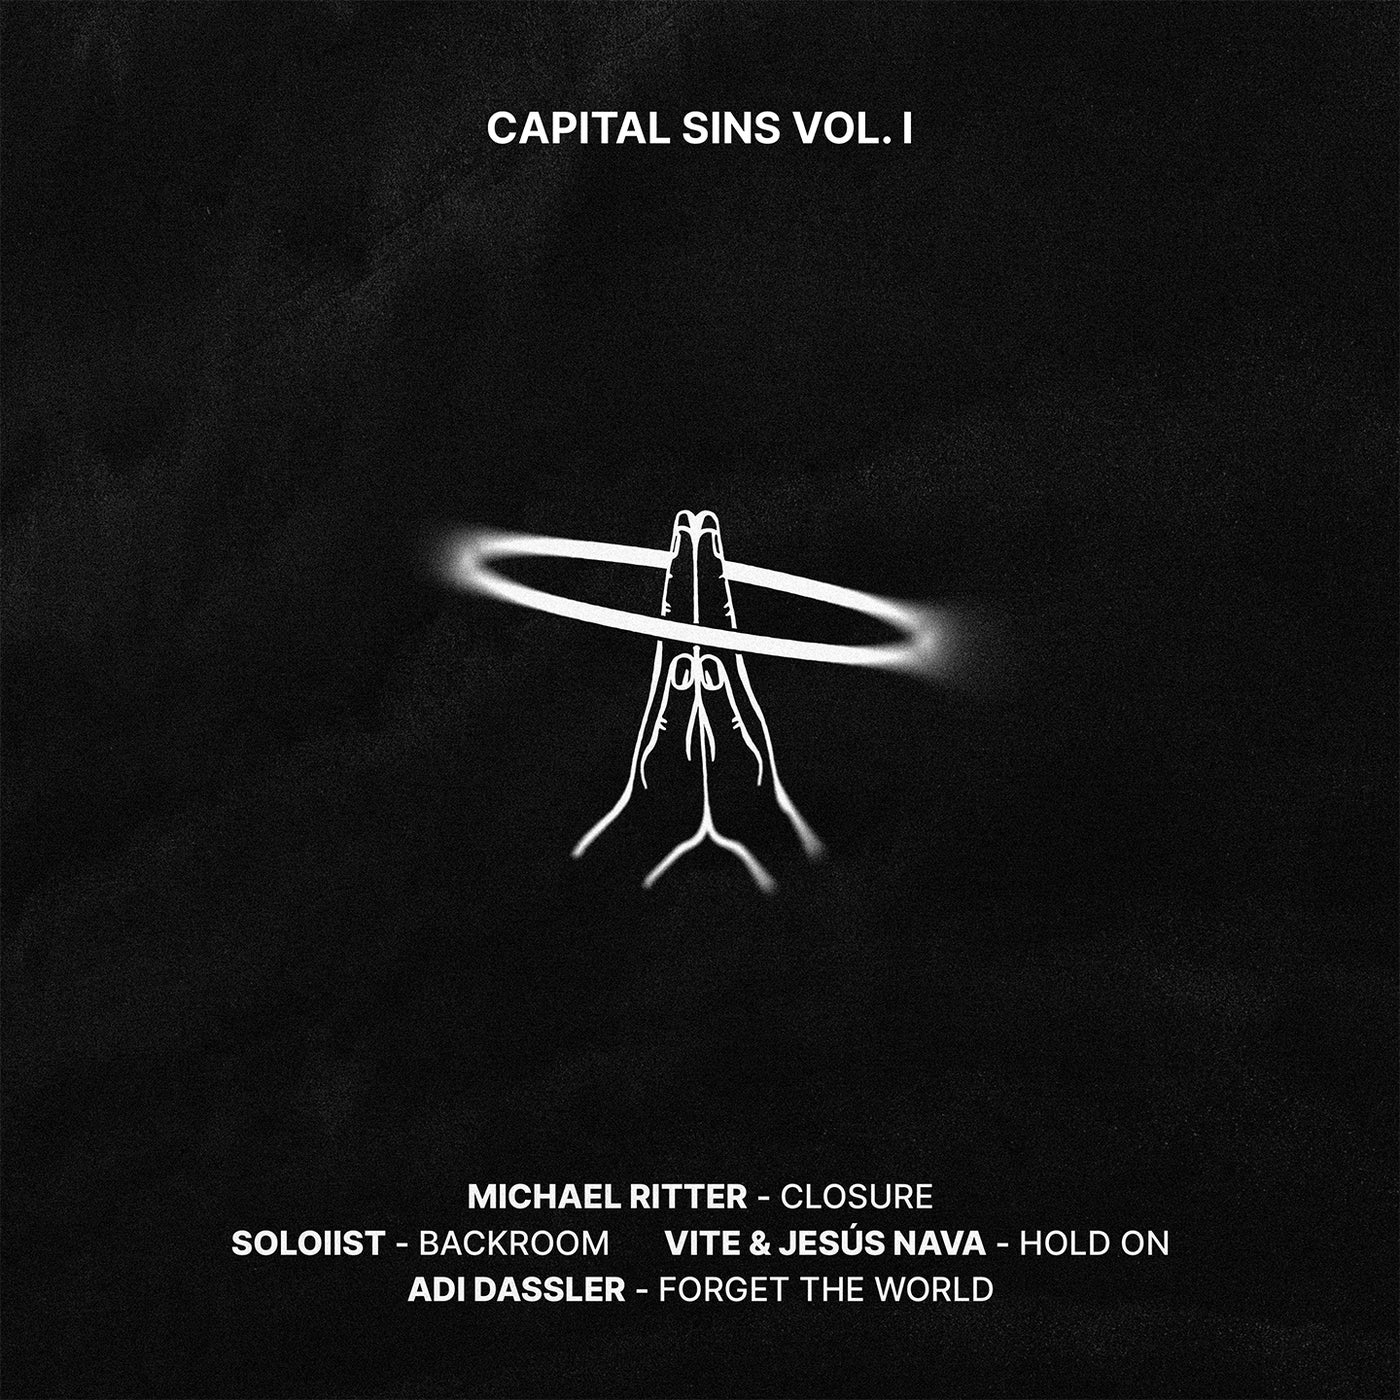 Capital Sins Vol. 1